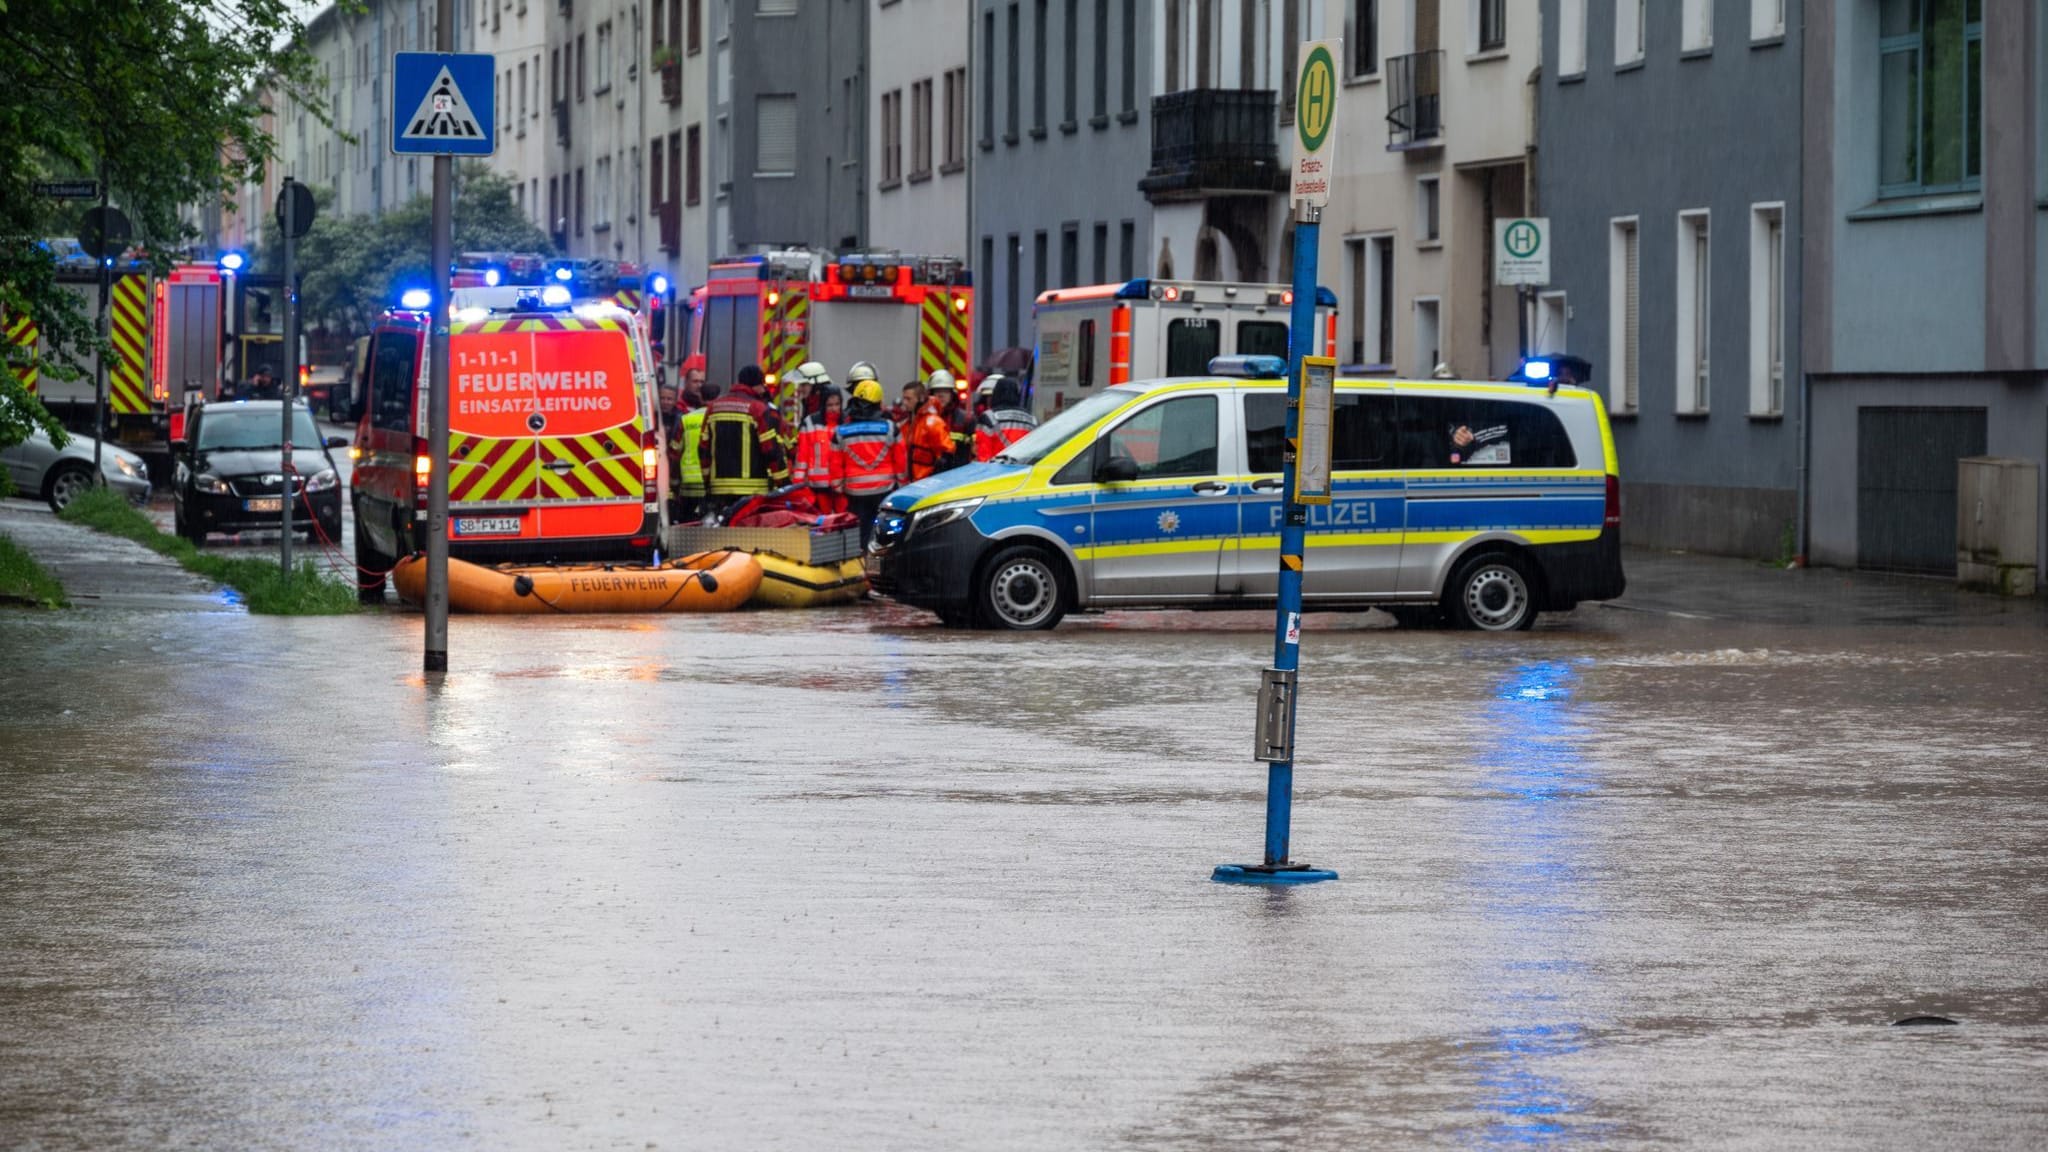 Hochwasser im Saarland: Feuerwehr warnt Anwohner vor Fluss | Unwetter-News